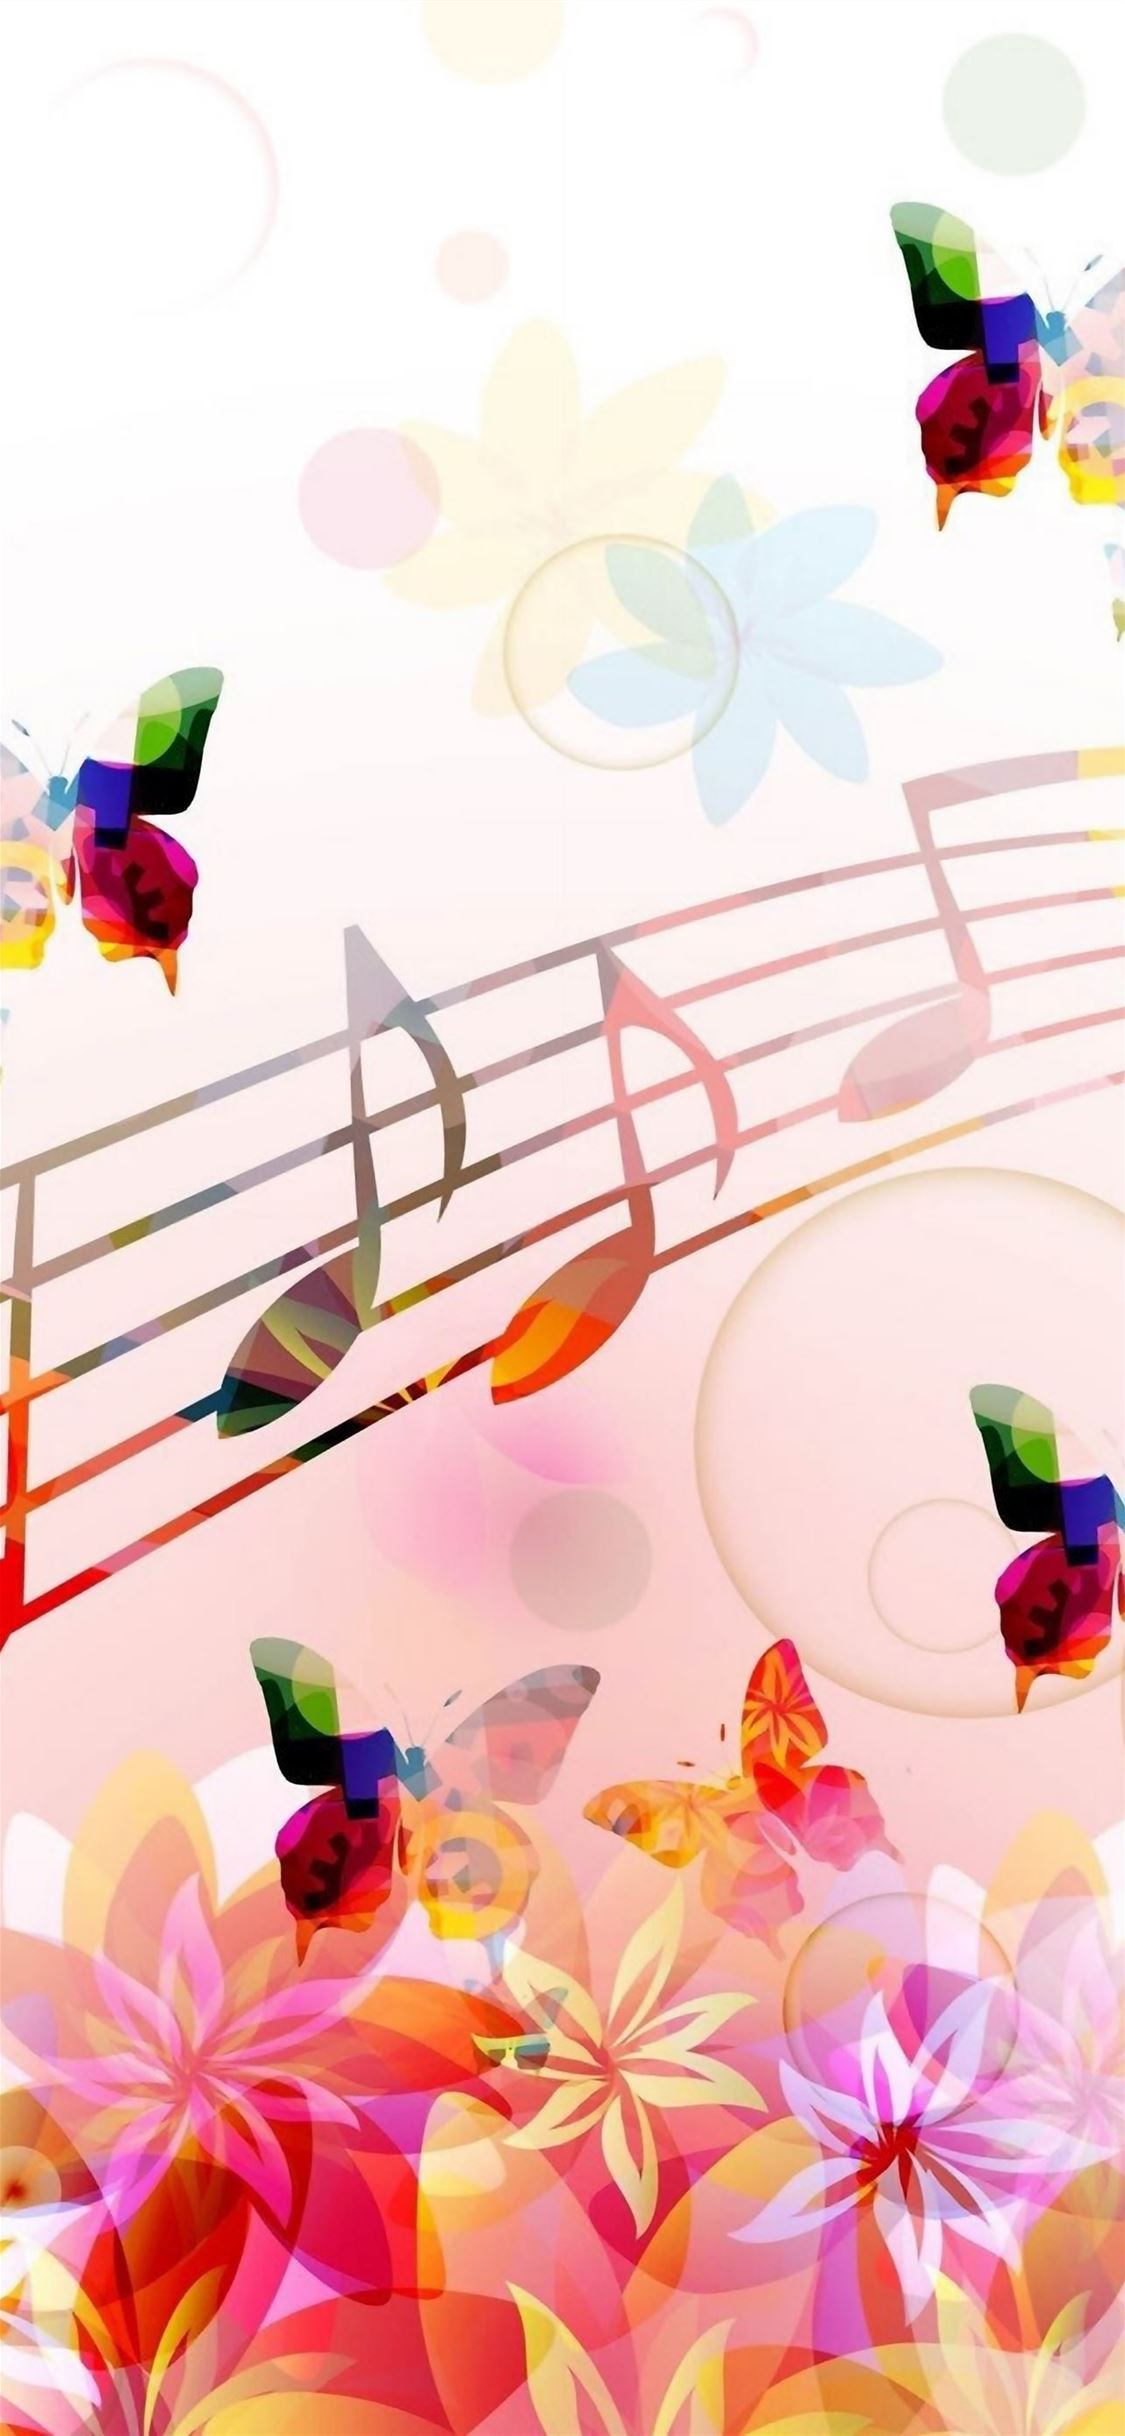 Musical Notes Butterflies iPhone wallpaper 